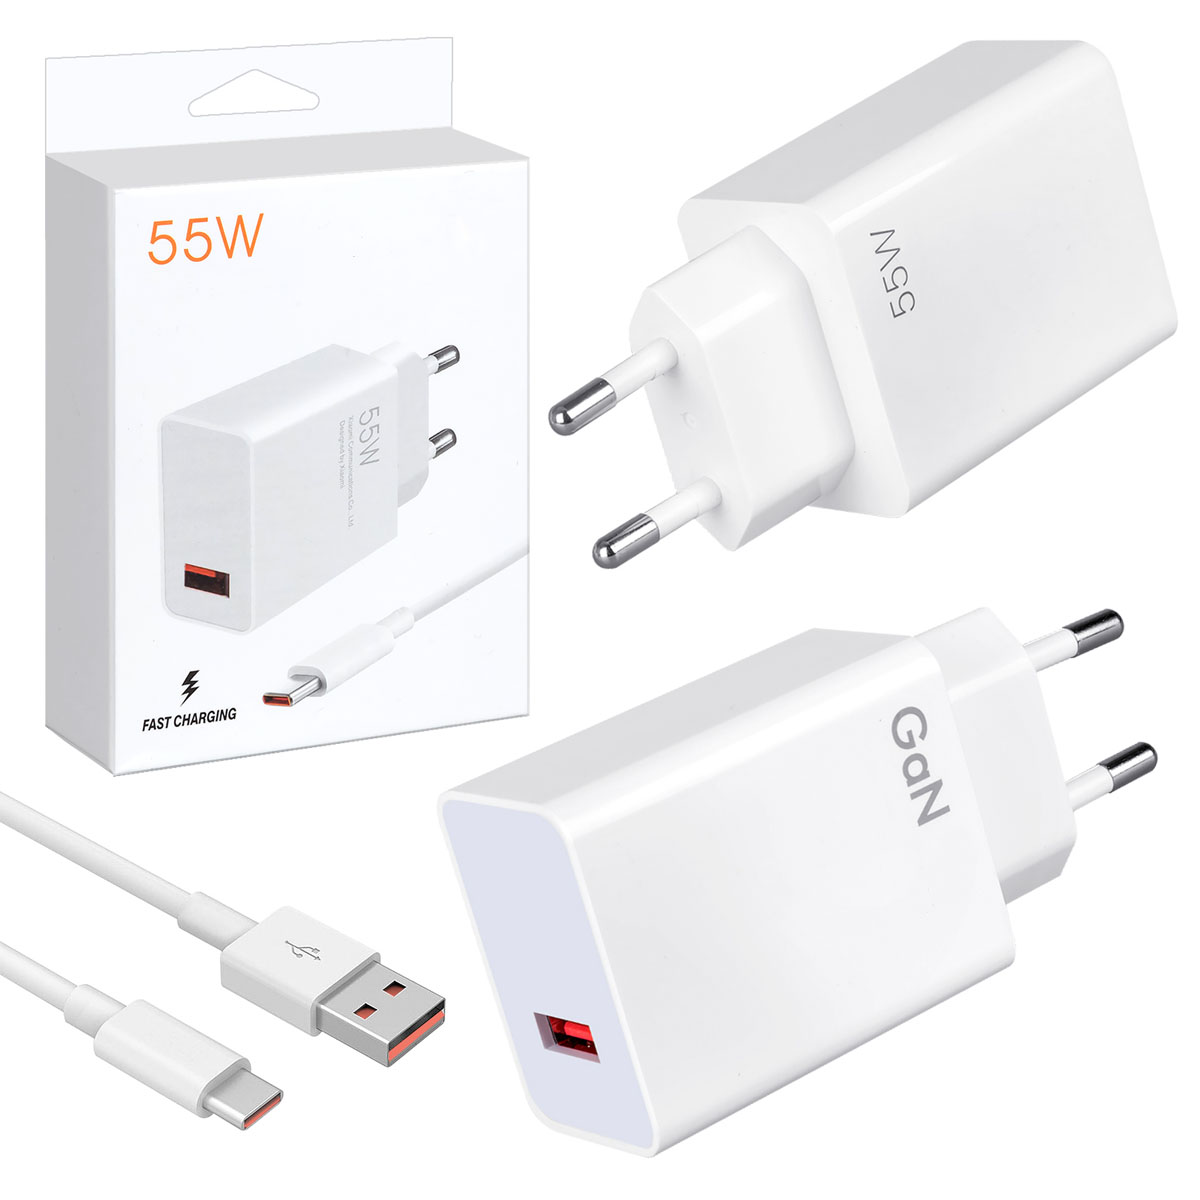 СЗУ (Сетевое зарядное устройство) MDY-12-EQ с кабелем USB Type C, 55W, 1 USB, длина 1 метр, цвет белый